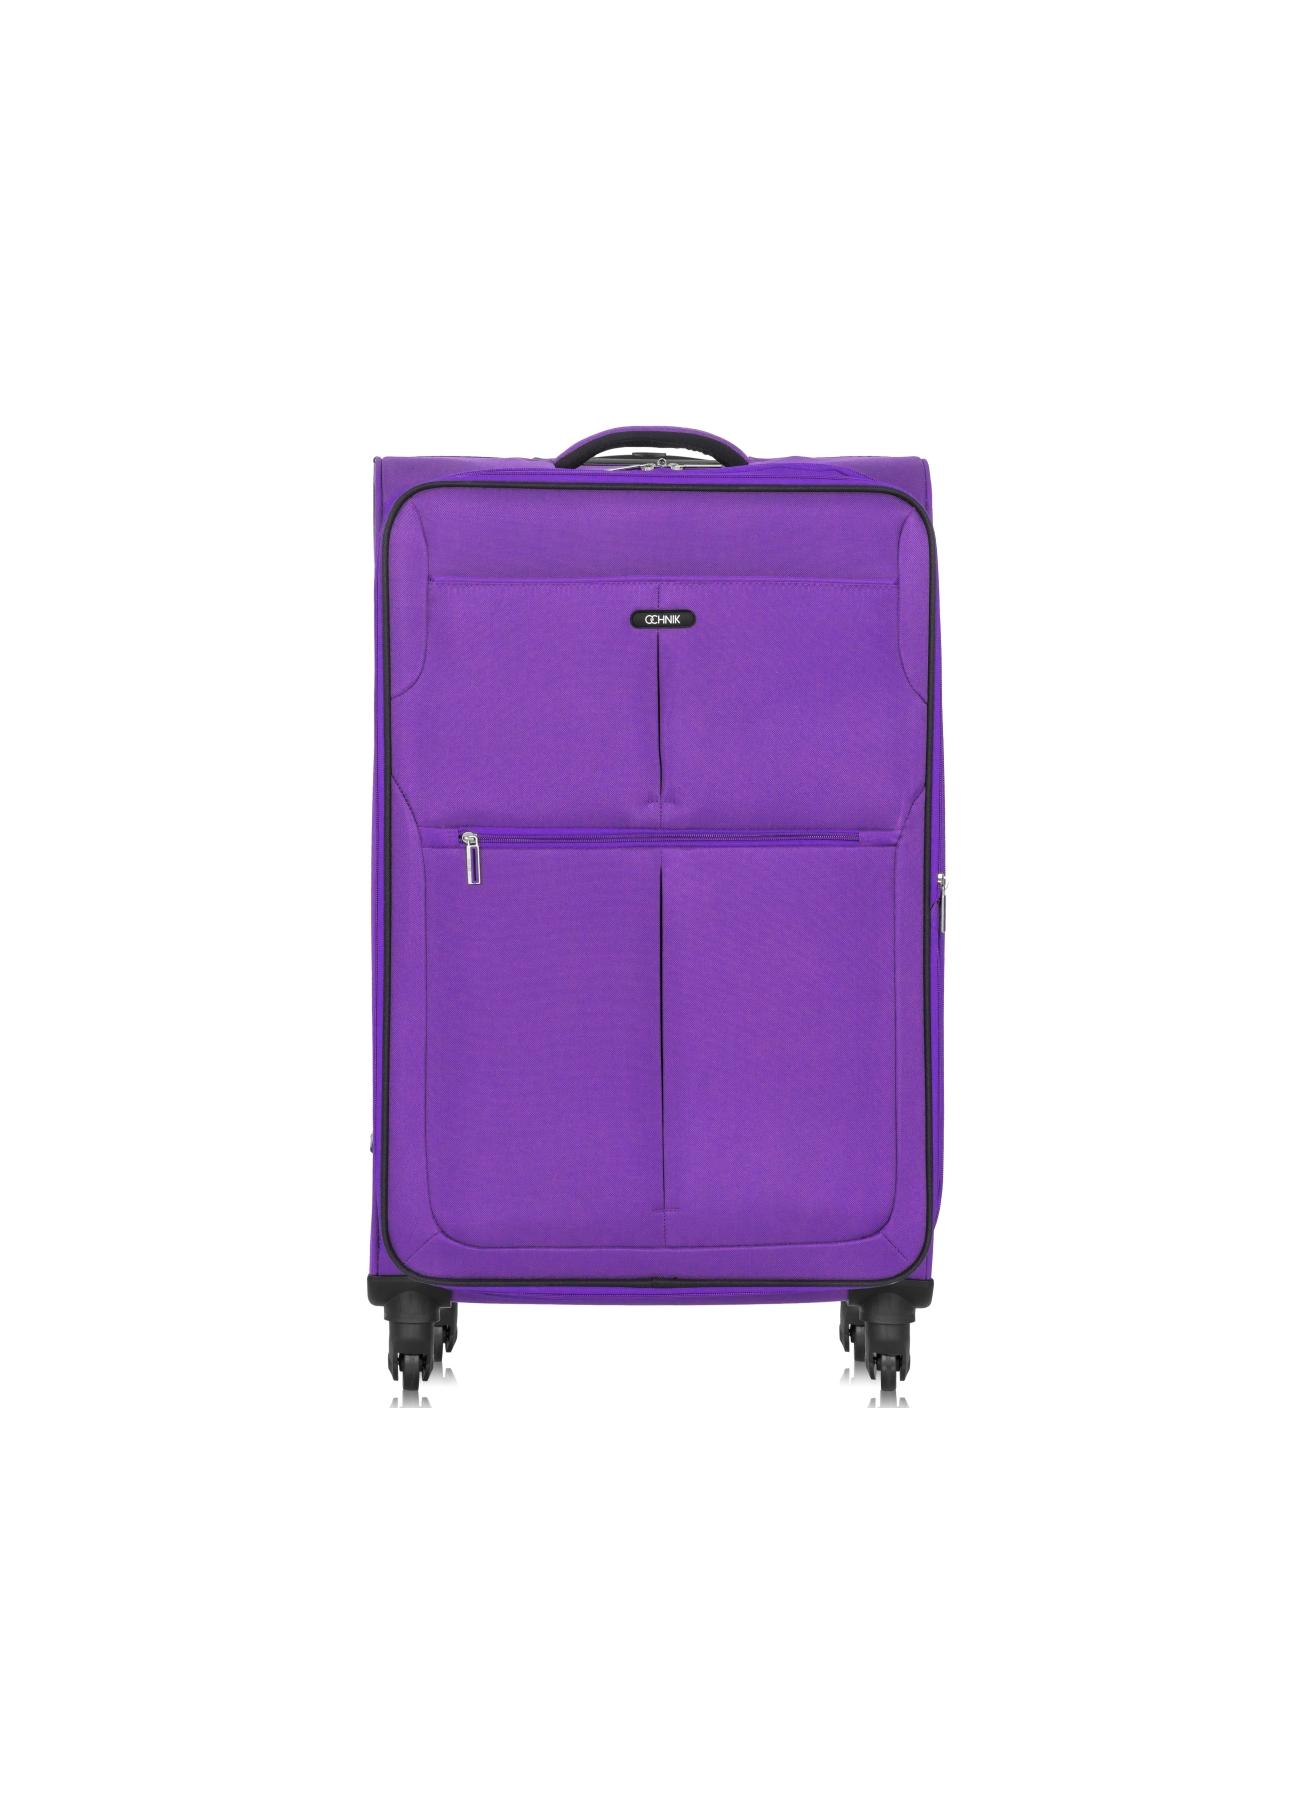 Duża walizka na kółkach WALNY-0030-72-28